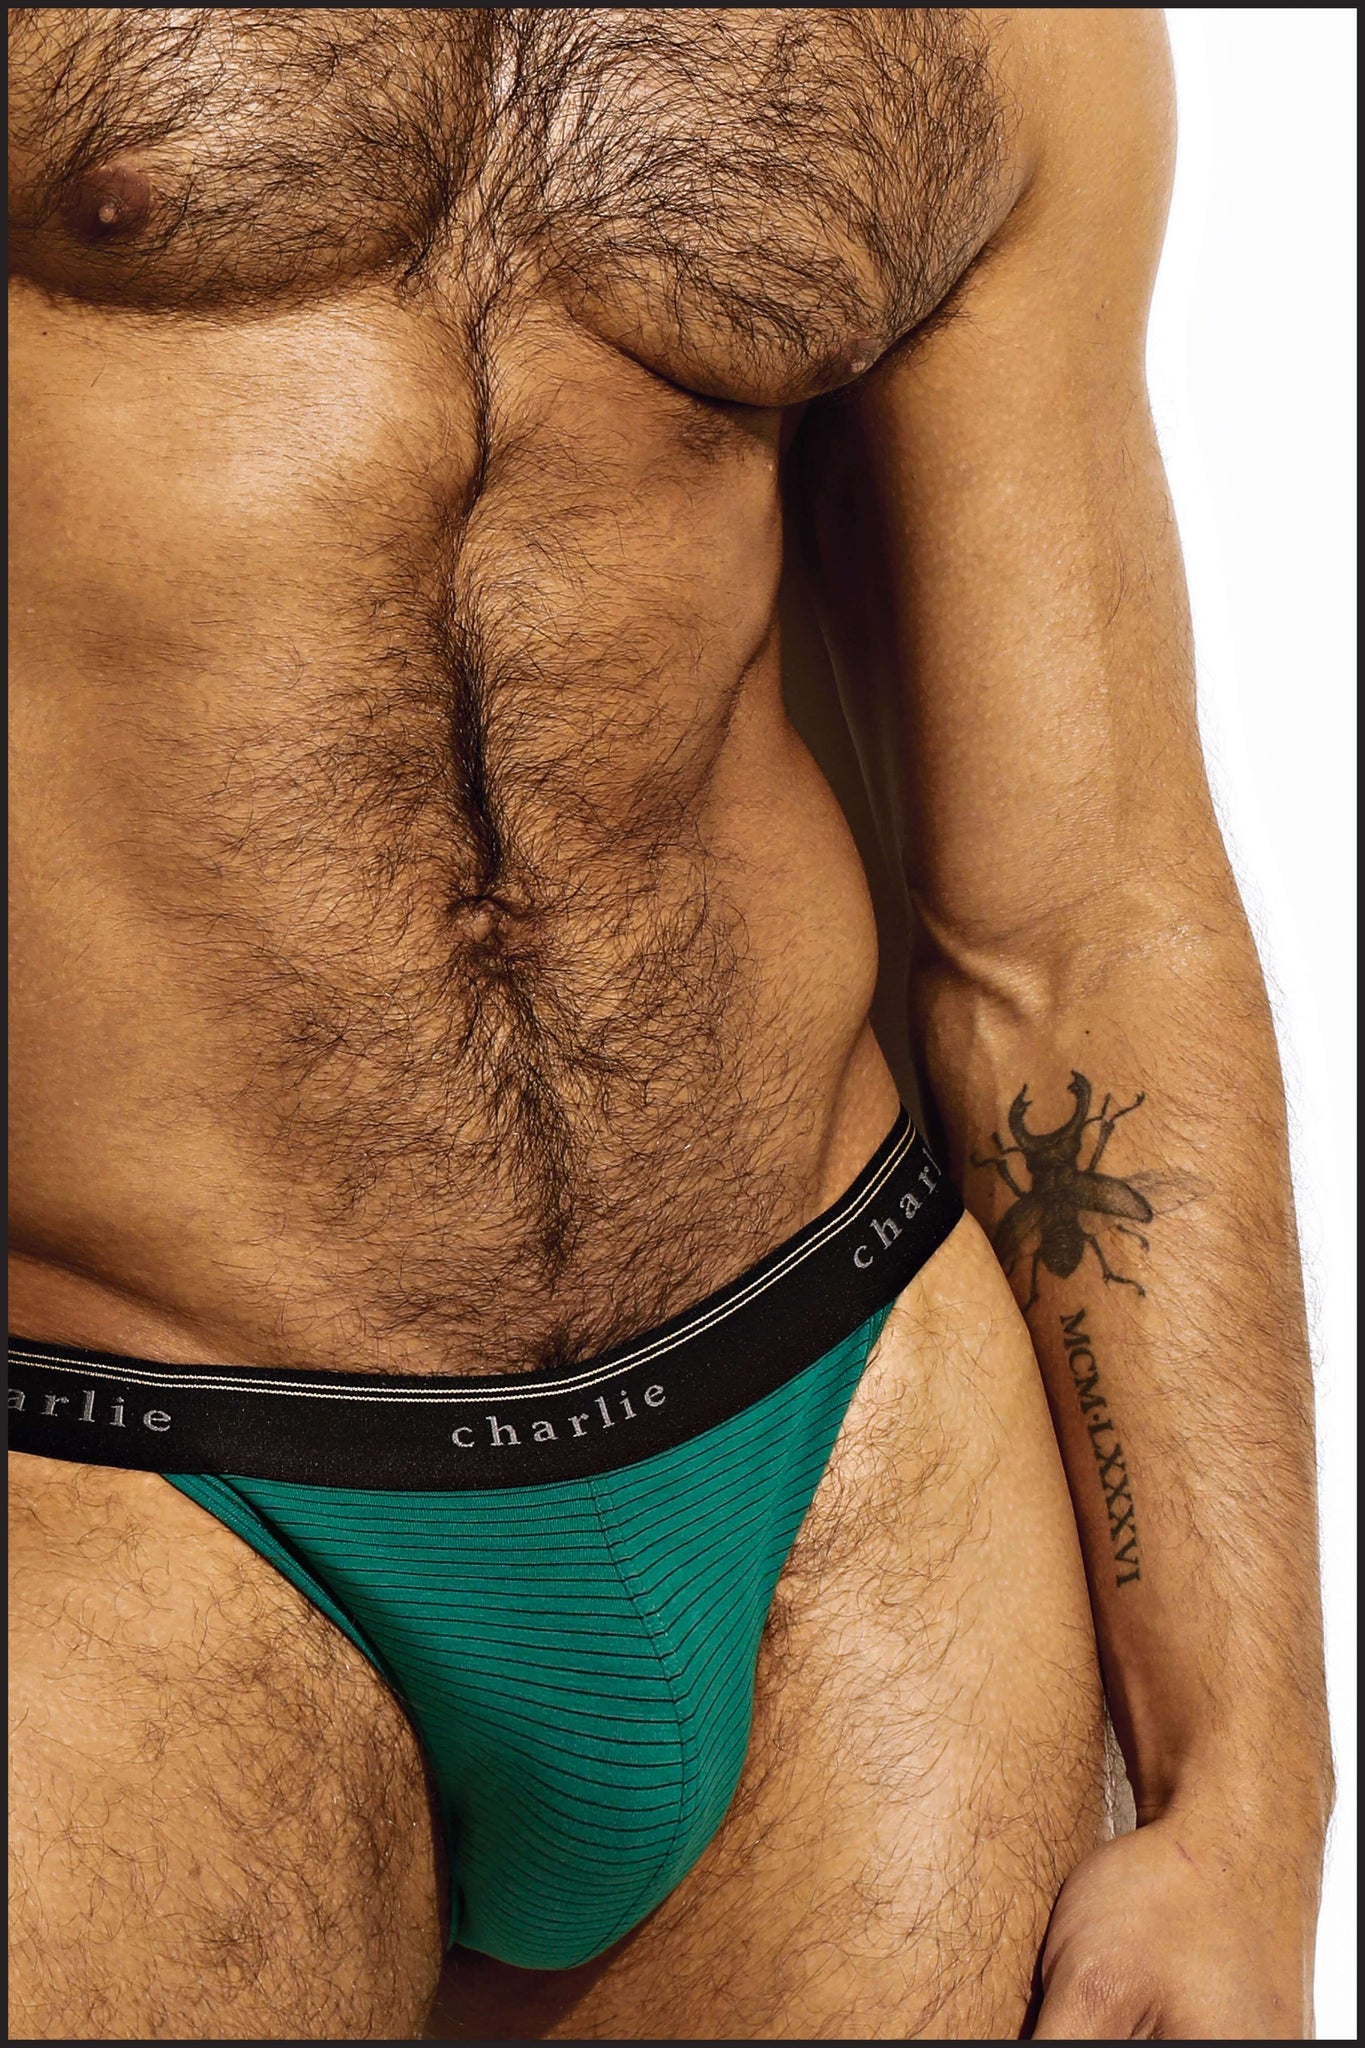 Charlie by Matthew Zink Vintage Microstripe Underwear Sport Brief